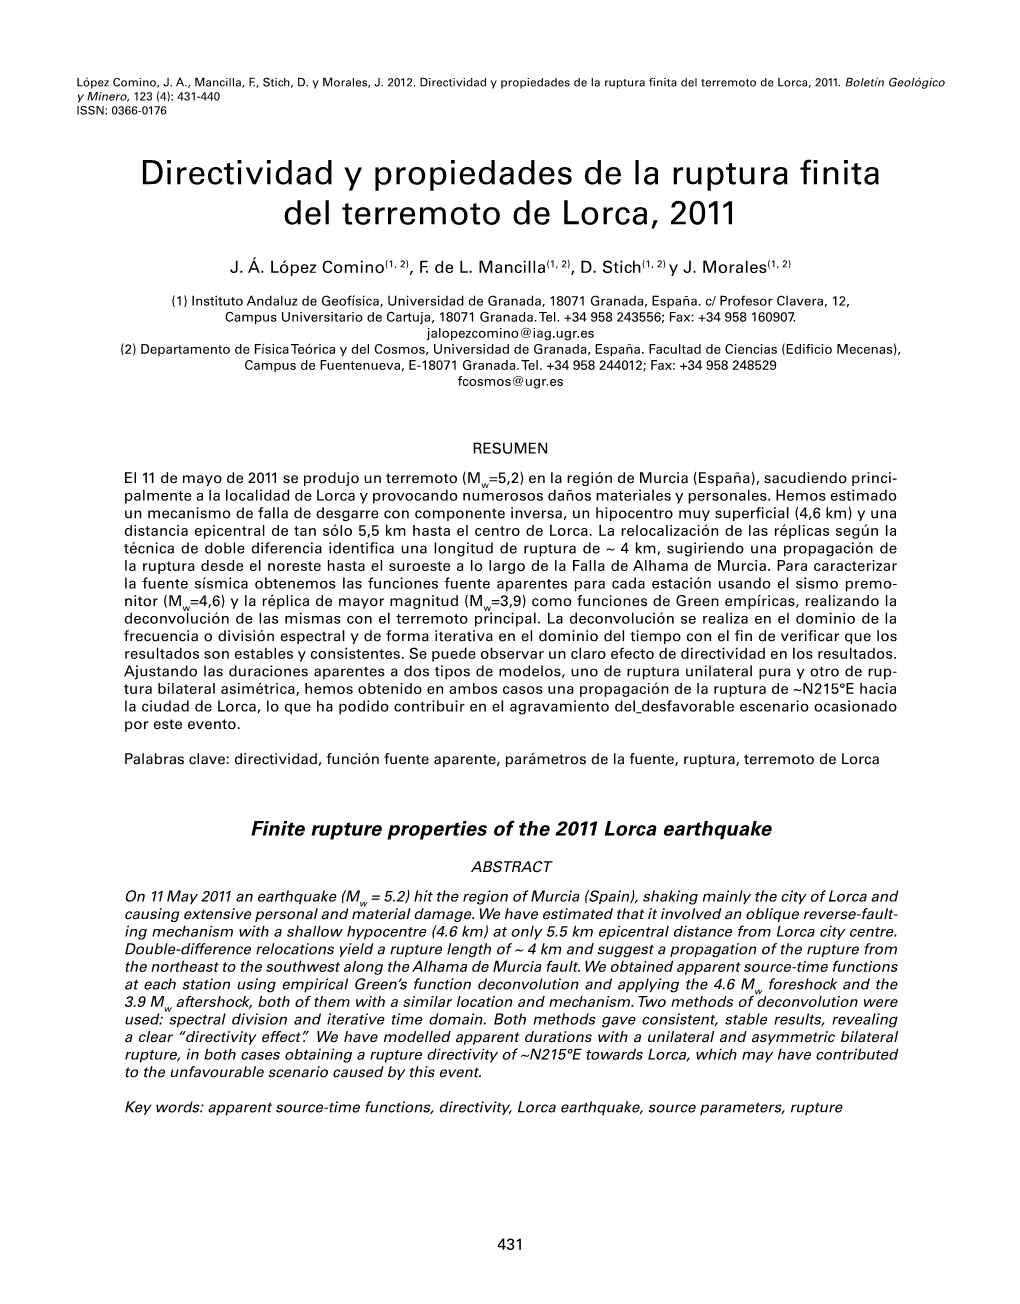 Directividad Y Propiedades De La Ruptura Finita Del Terremoto De Lorca, 2011